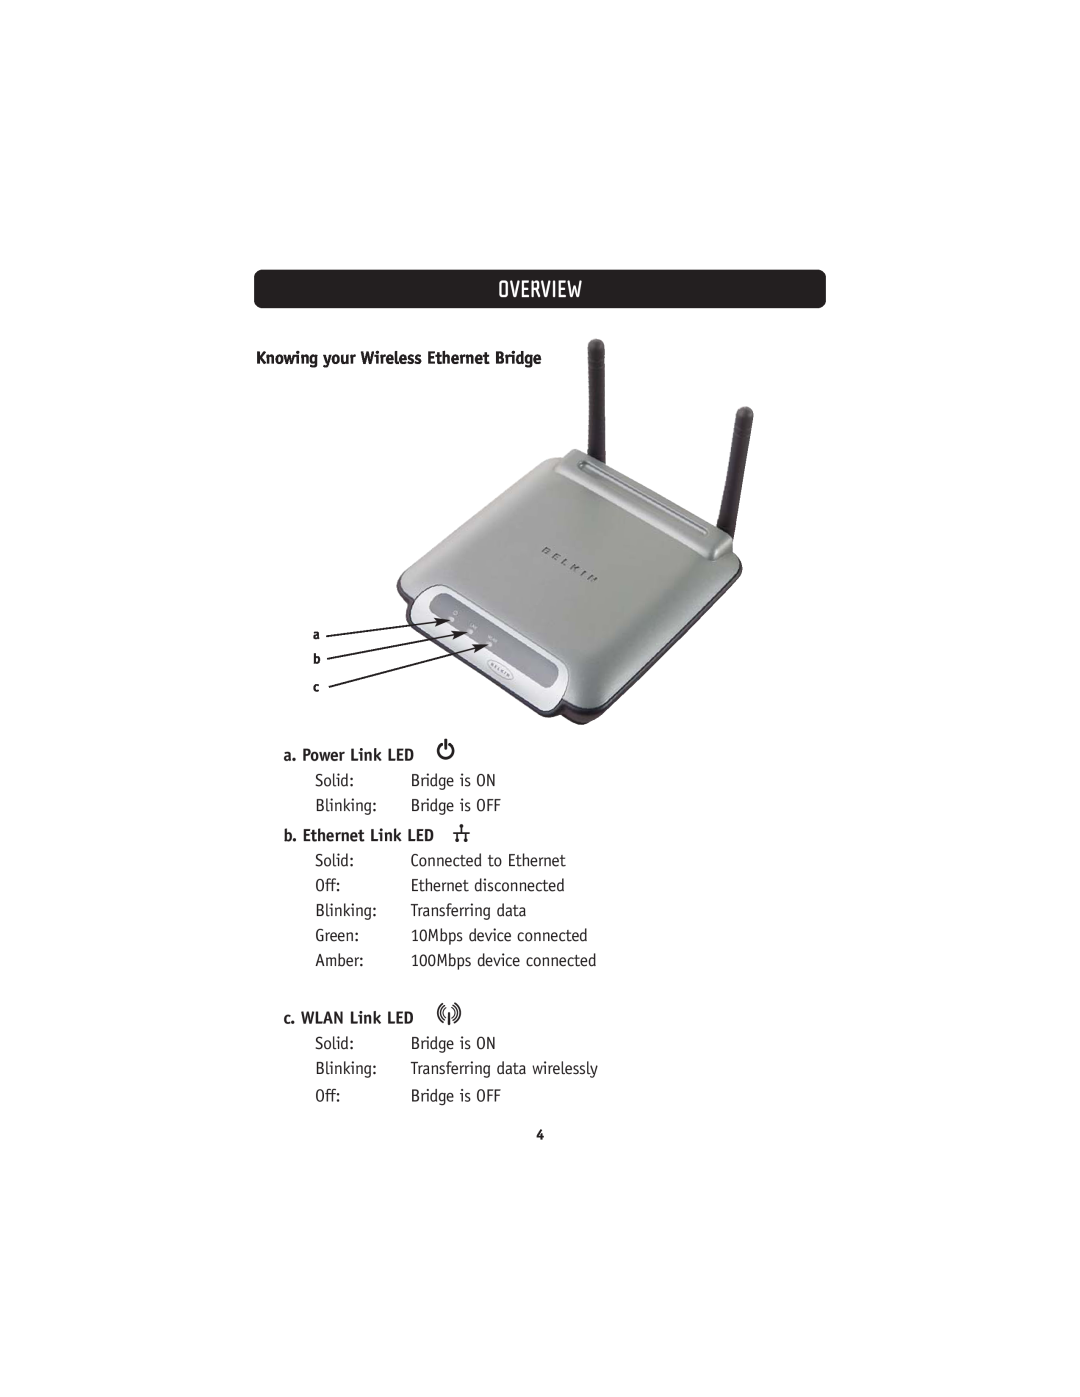 Belkin 802.11g Knowing your Wireless Ethernet Bridge, a. Power Link LED, b. Ethernet Link LED, c. WLAN Link LED, Overview 